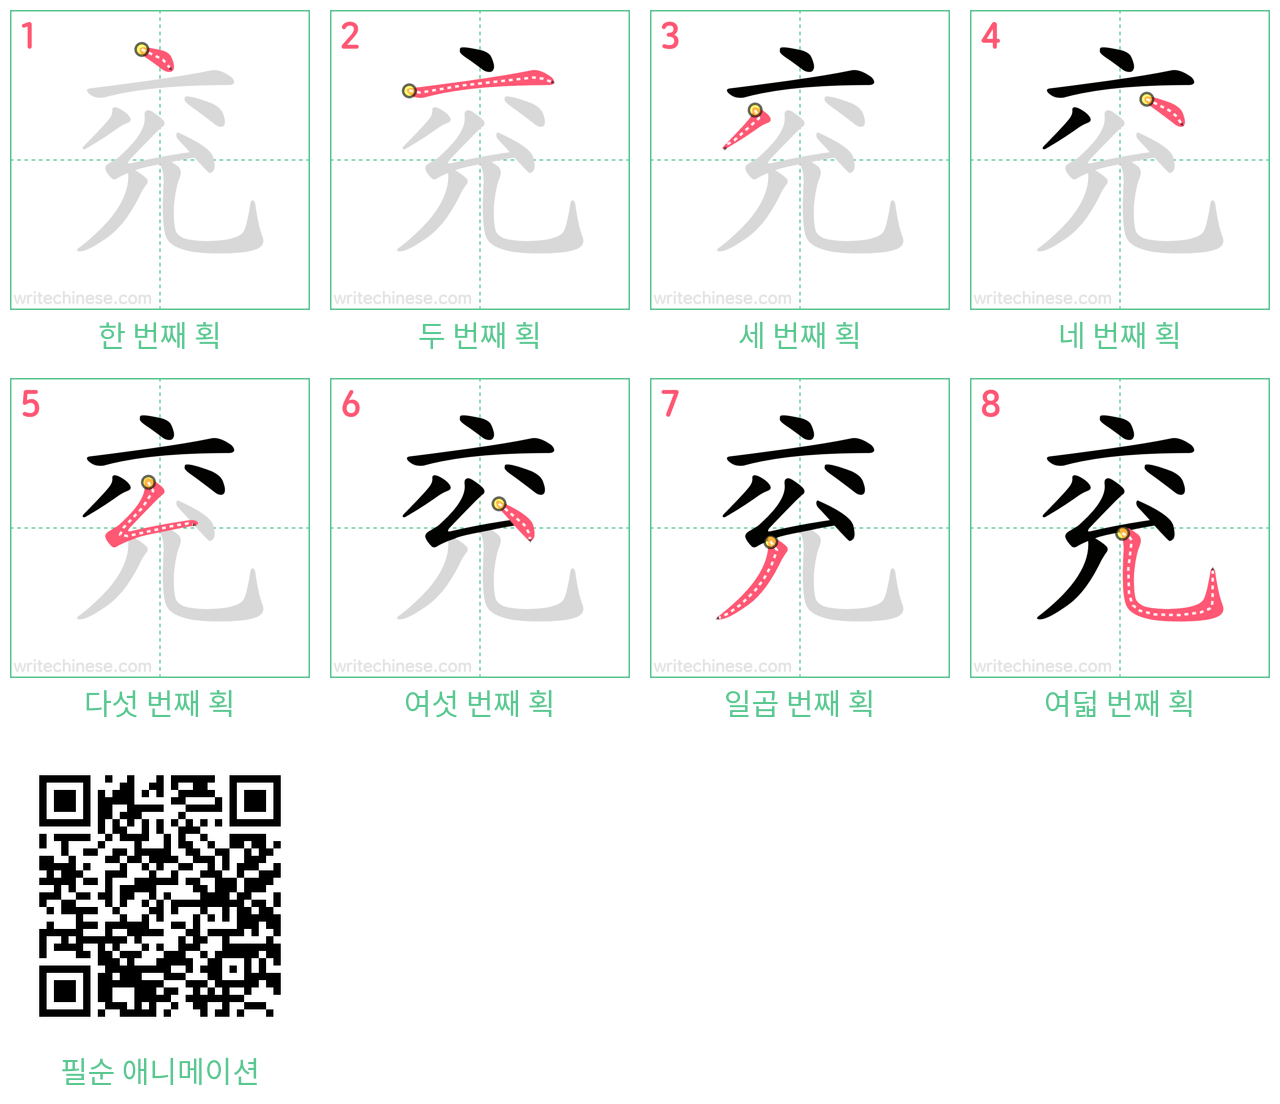 兖 step-by-step stroke order diagrams